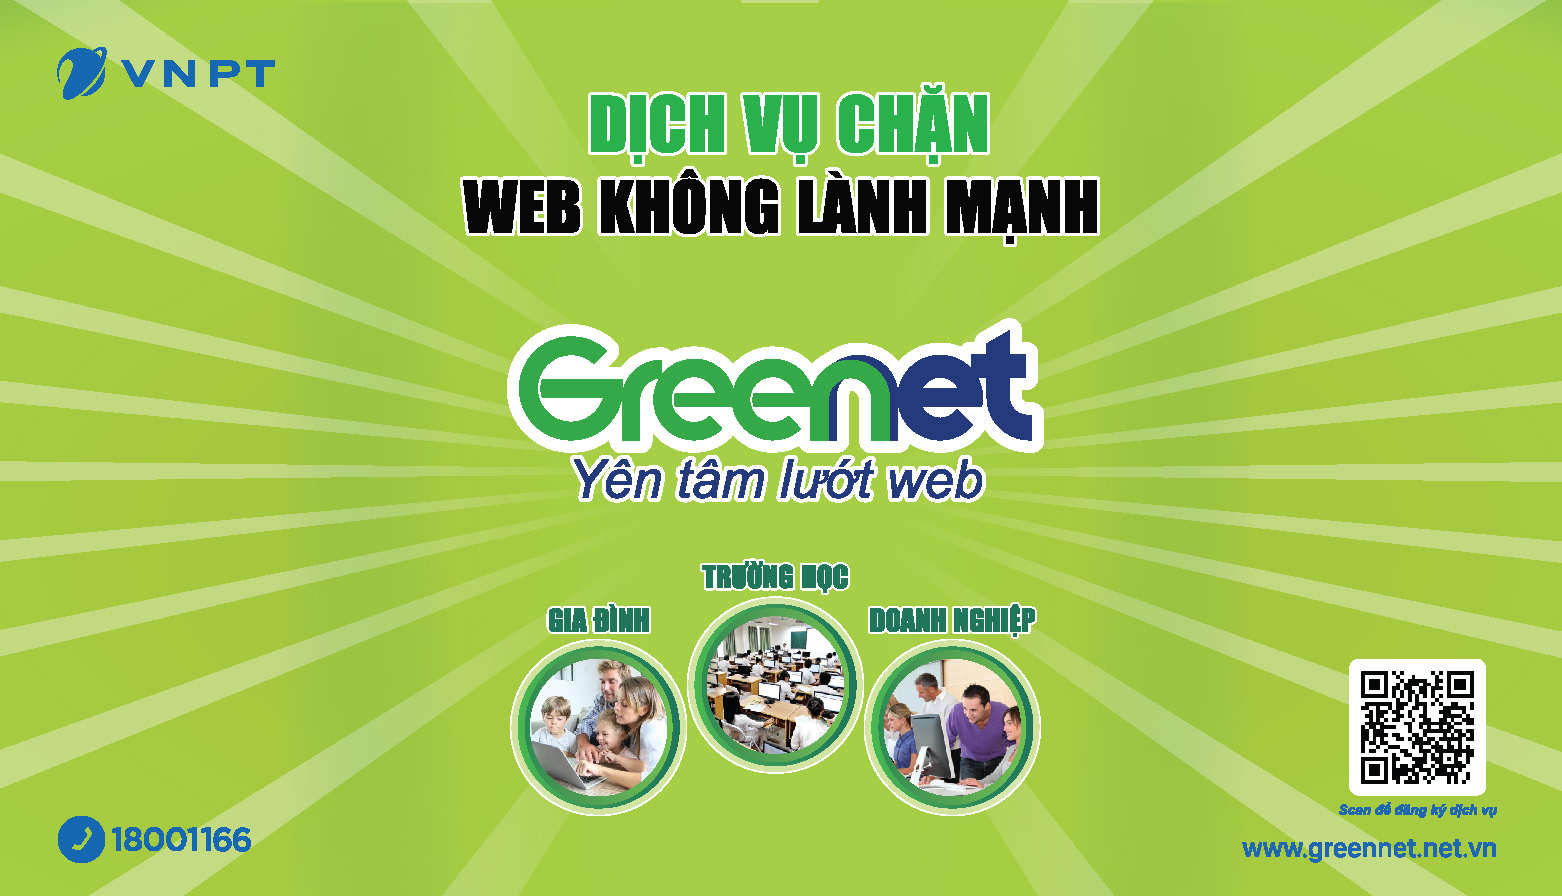 Dịch vụ GreenNet là gì, cách sử dụng như thế nào?